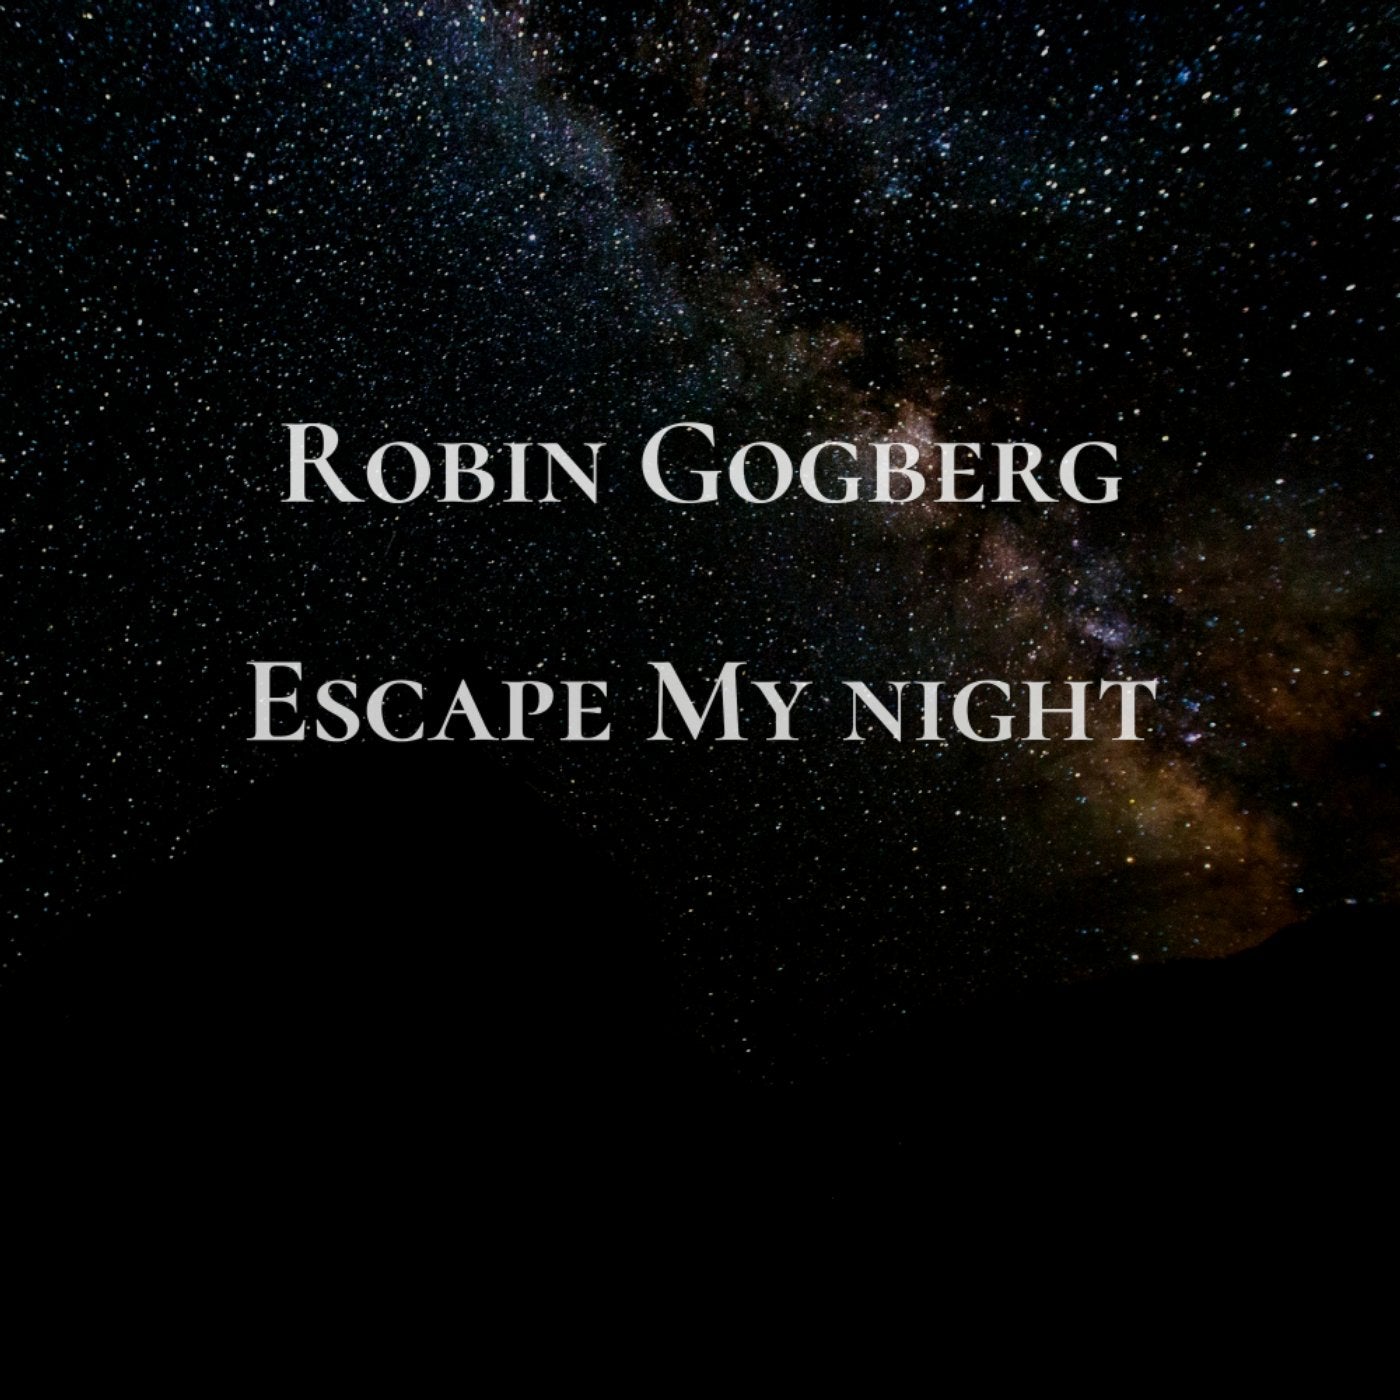 Escape My Night